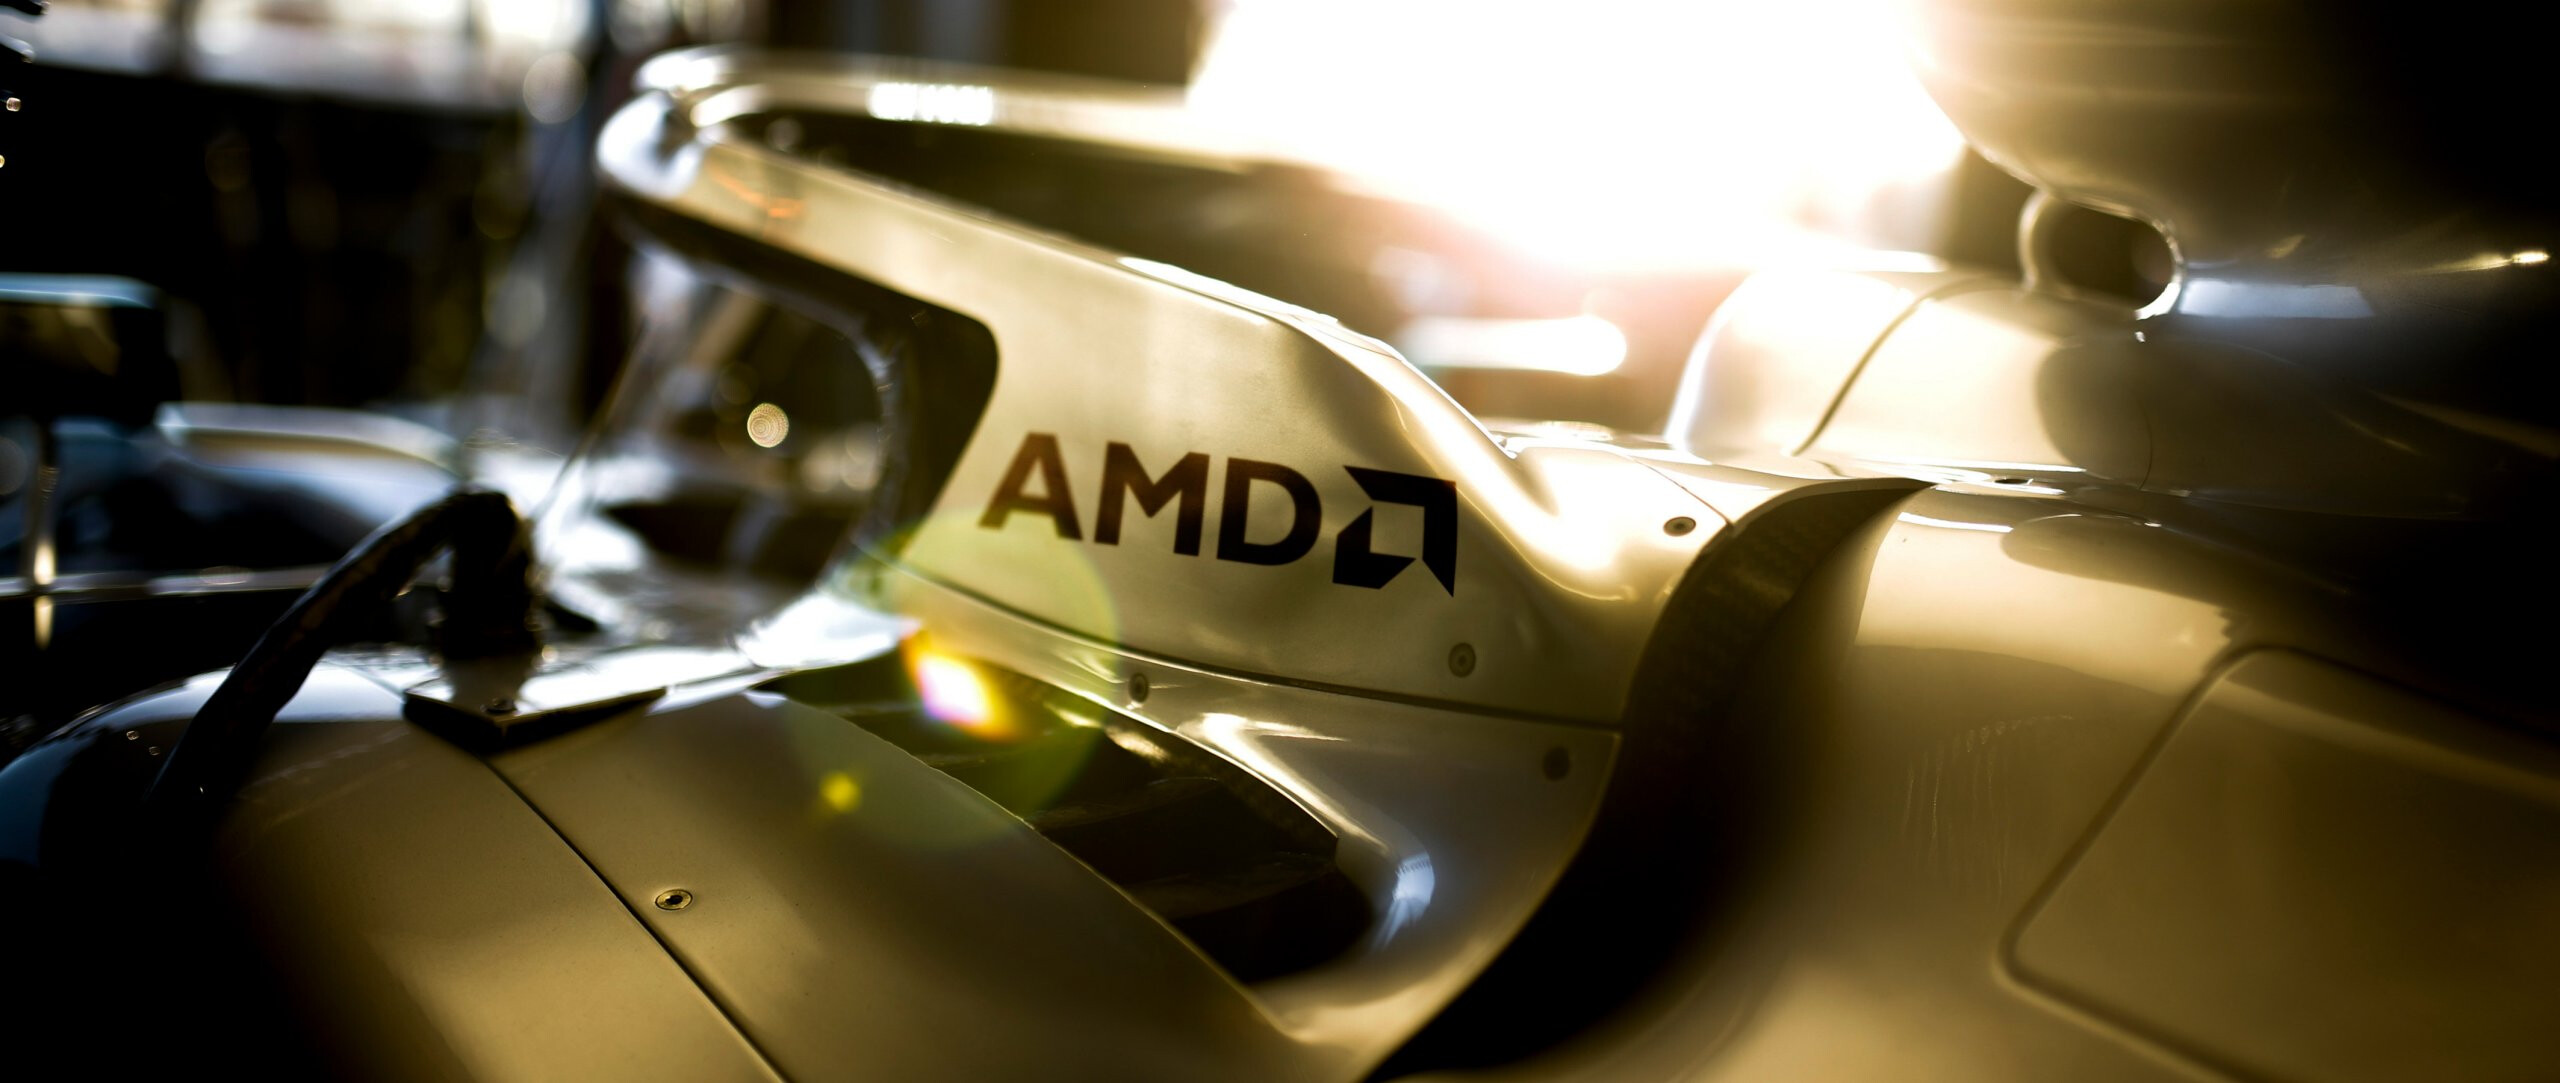 Lisa Su parabeniza Mercedes-AMG e Bottas pelo Grande Prêmio da Áustria, foi um bom investimento